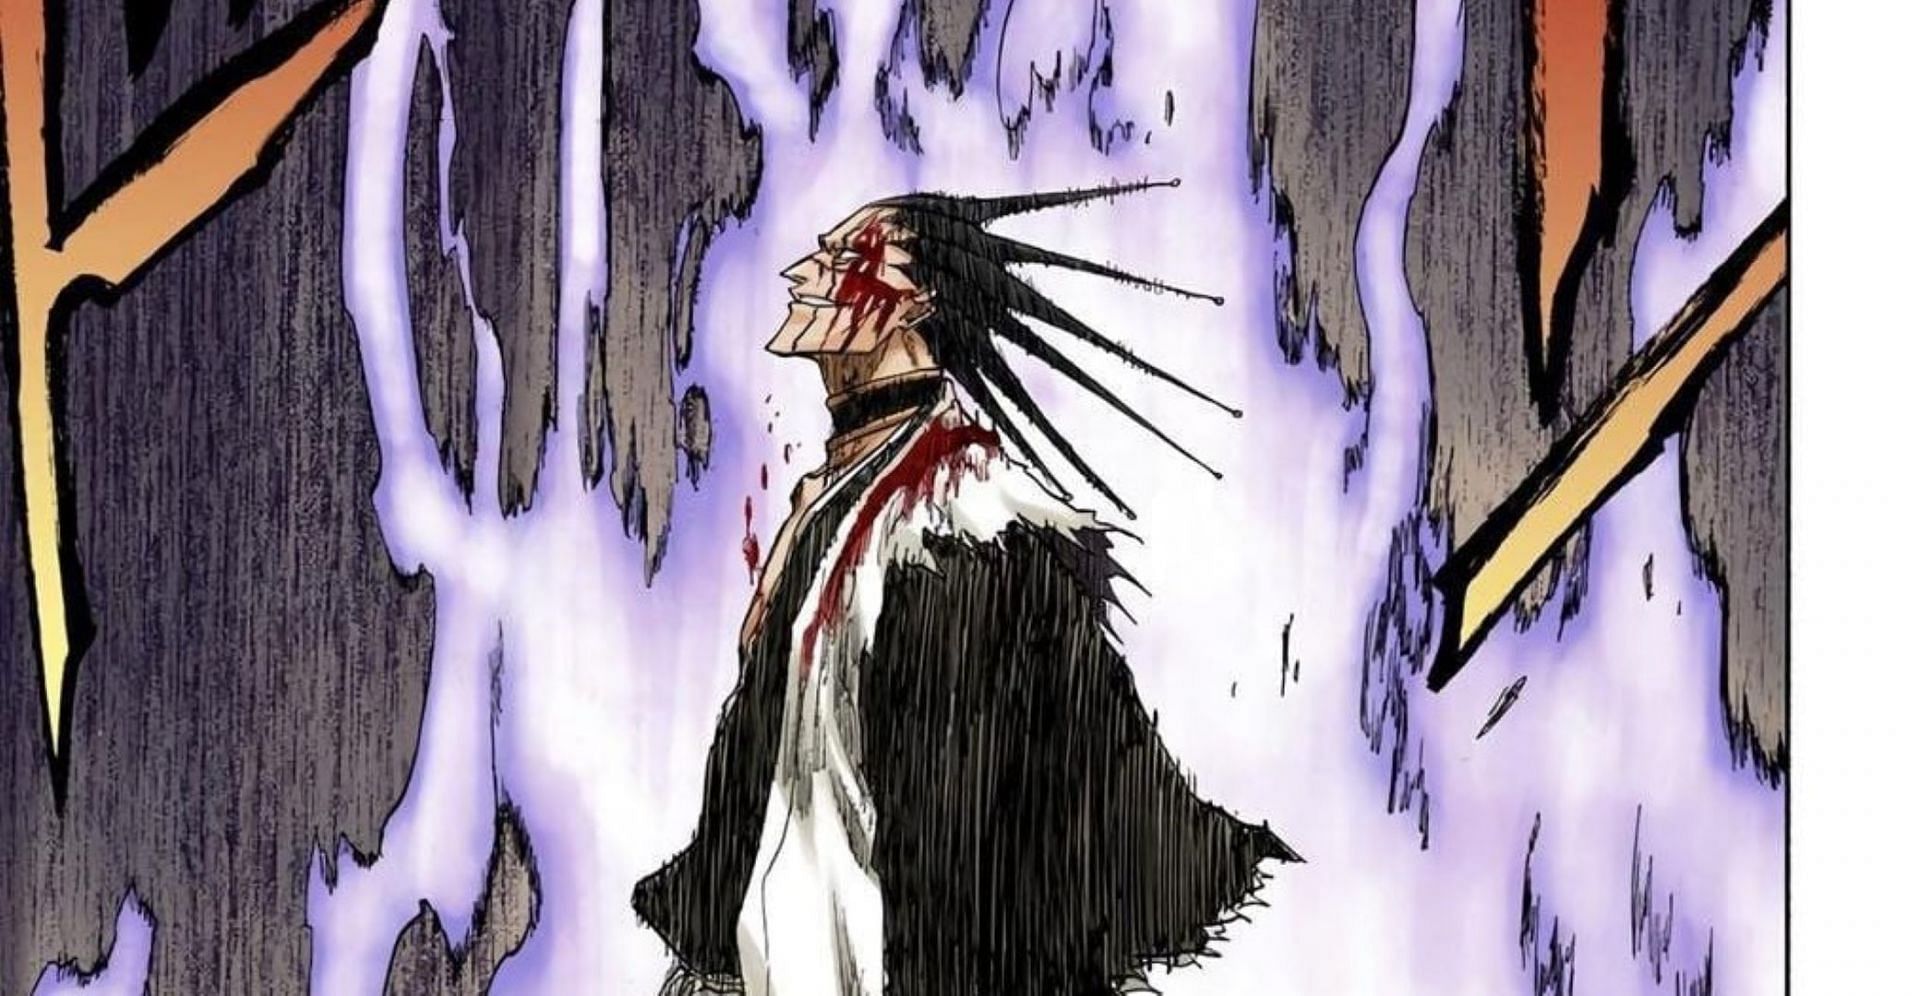 Zaraki Kenpachi as seen in the manga (Image via Shueisha/Tite Kubo)